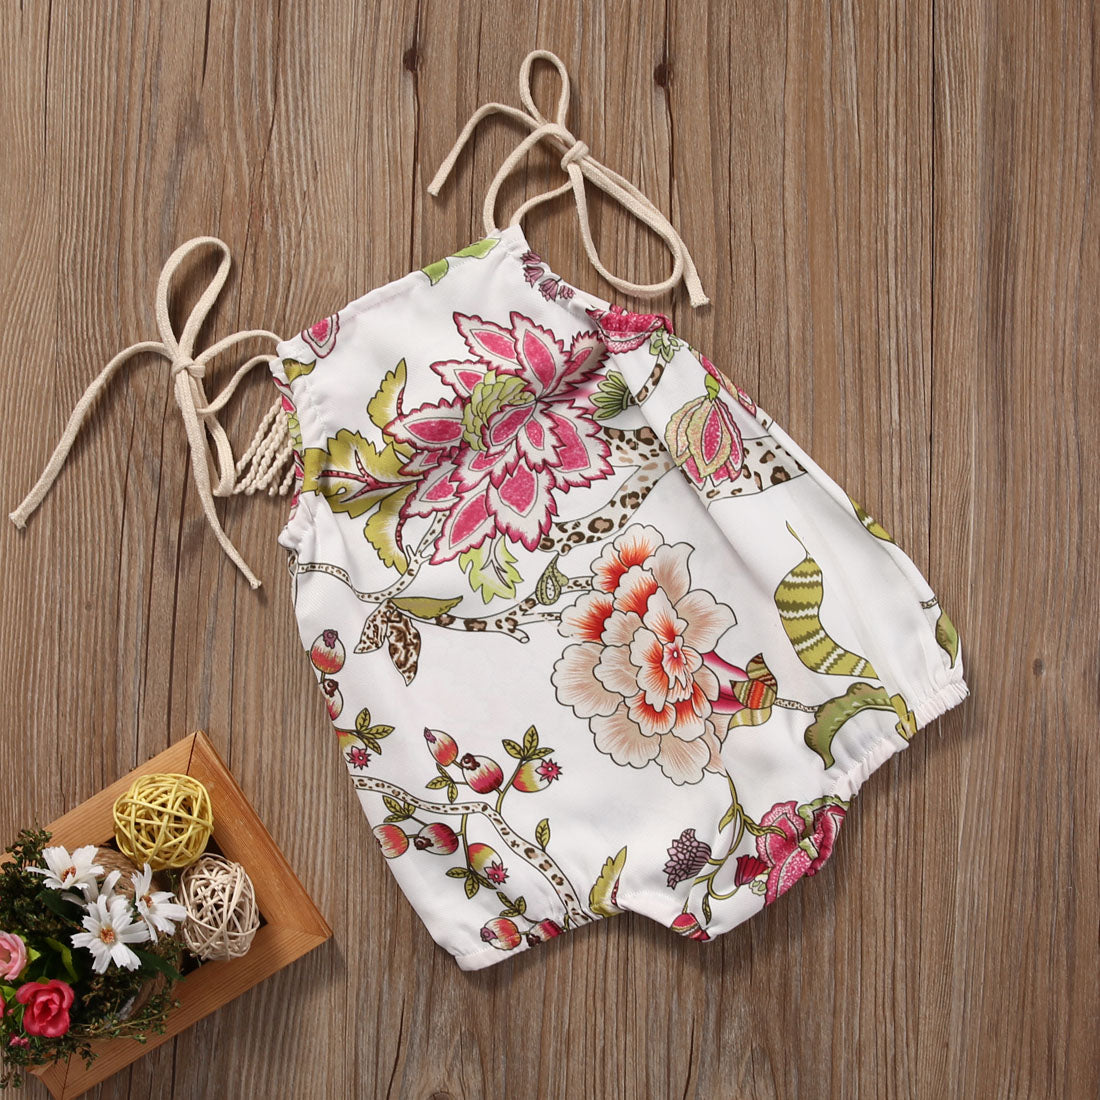 Floral Newborn Infant Baby Girls Bodysuit  Jumpsuit Outfits Sunsuits Set Clothes - ebowsos